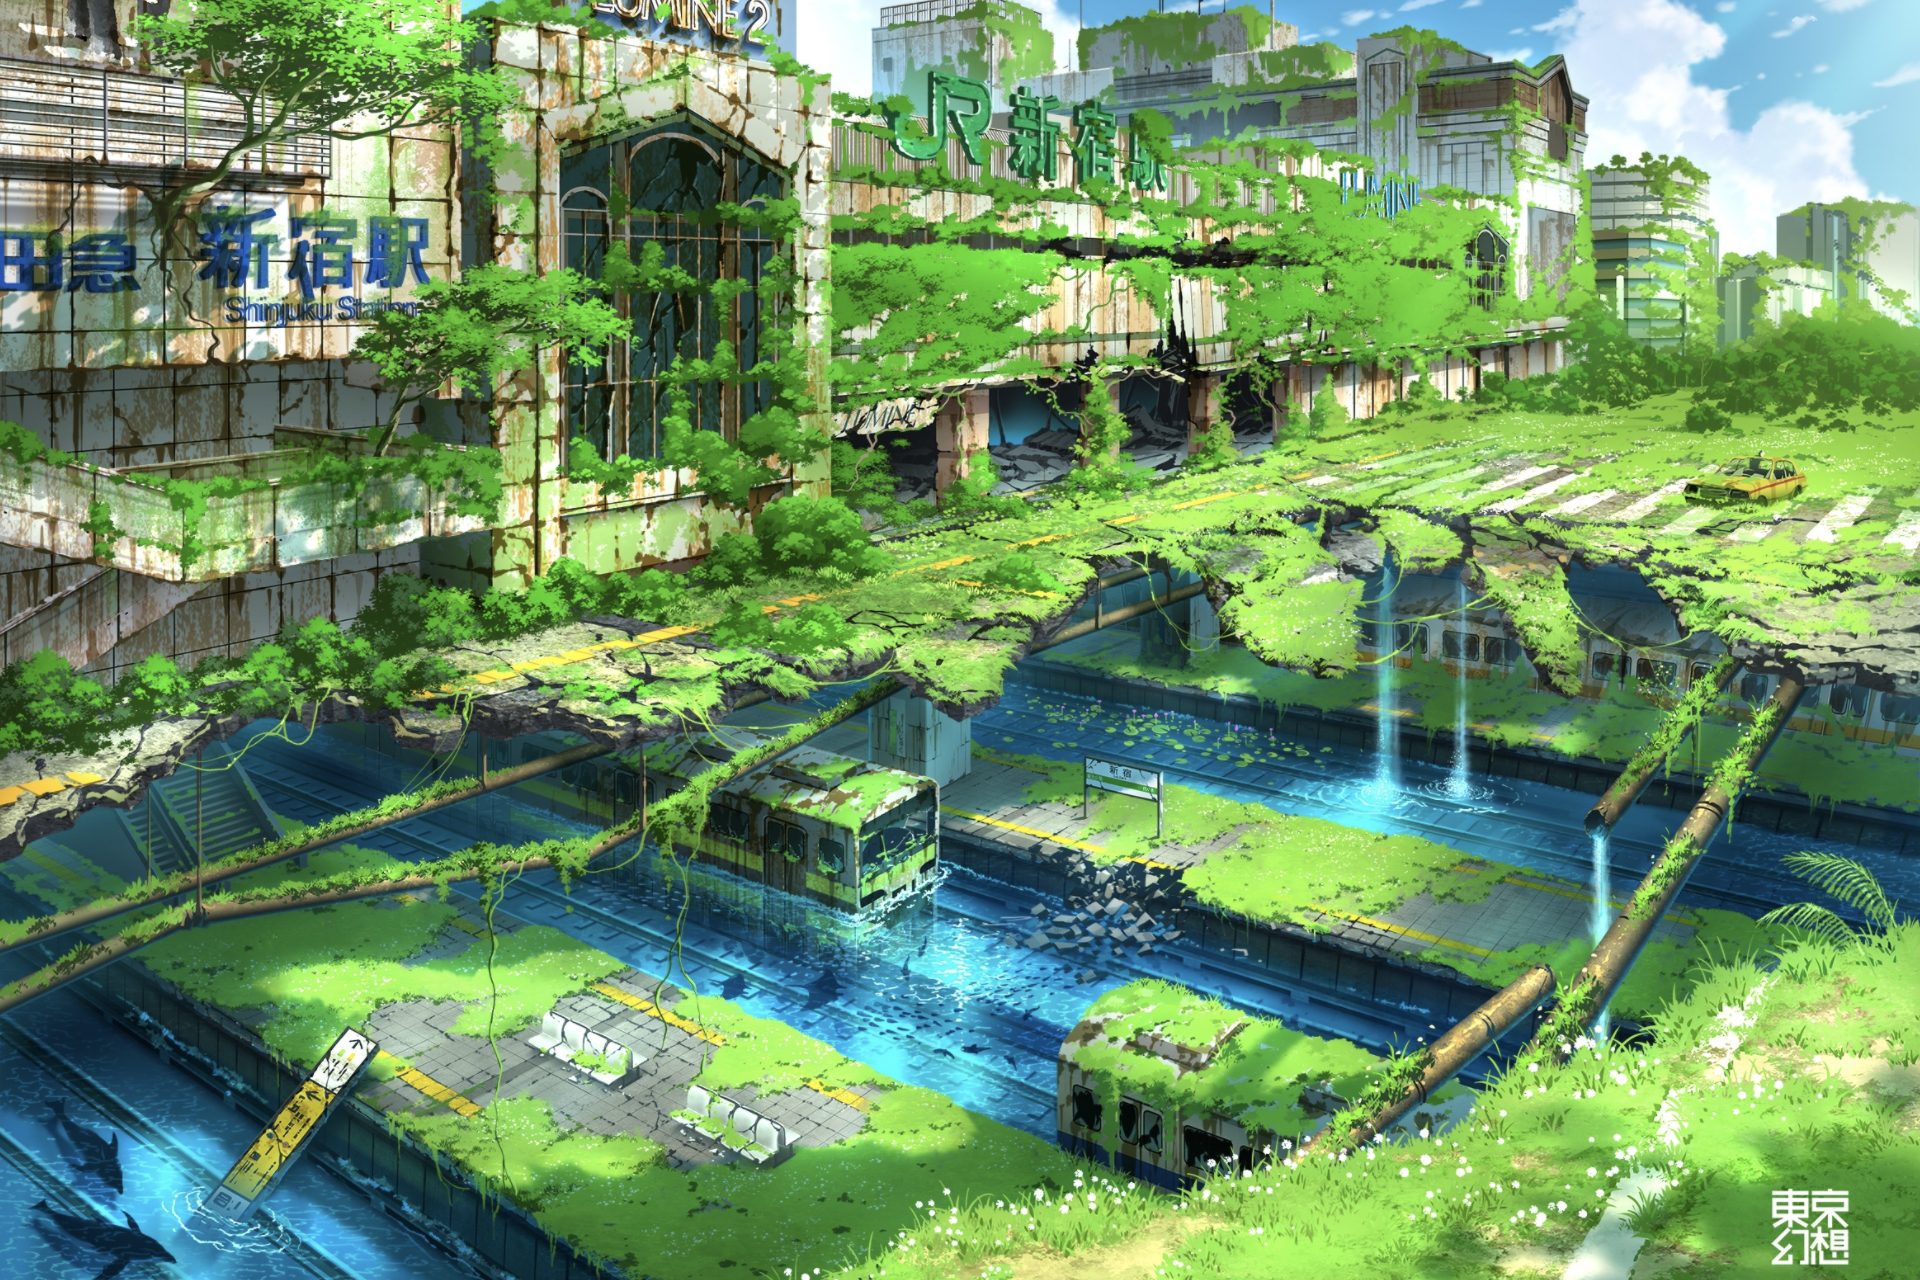 人が誰もいない 東京の未来図描いた 幻想イラスト が話題 ニュース